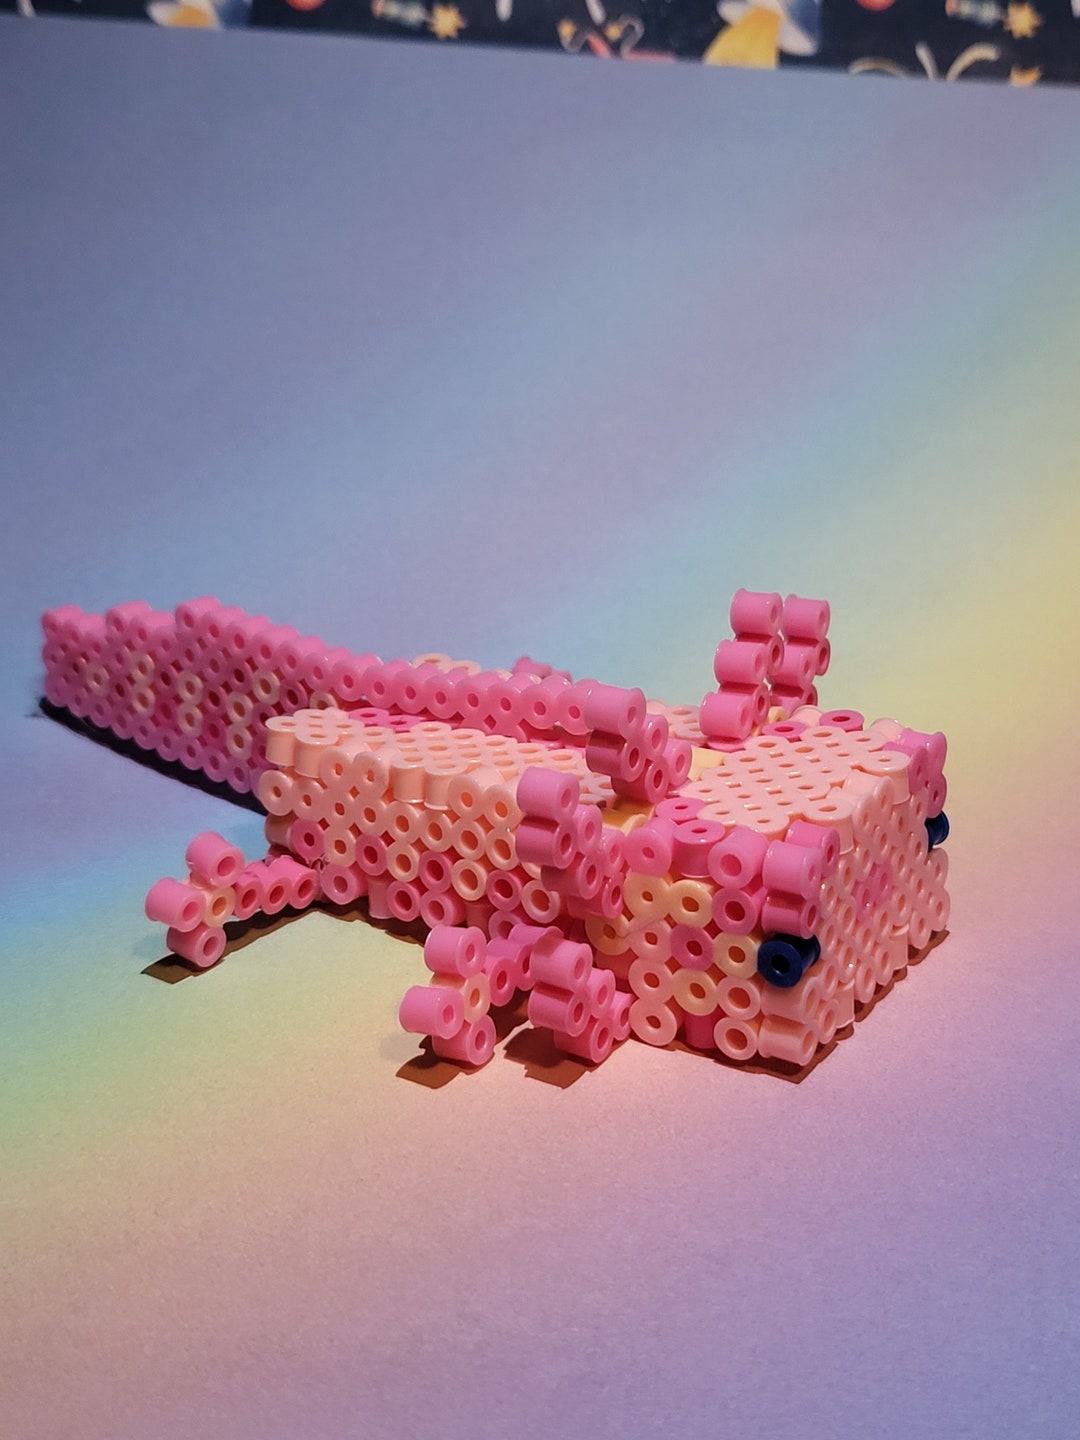 Minecraft Axolotl (Pink) Perler Bead Pattern